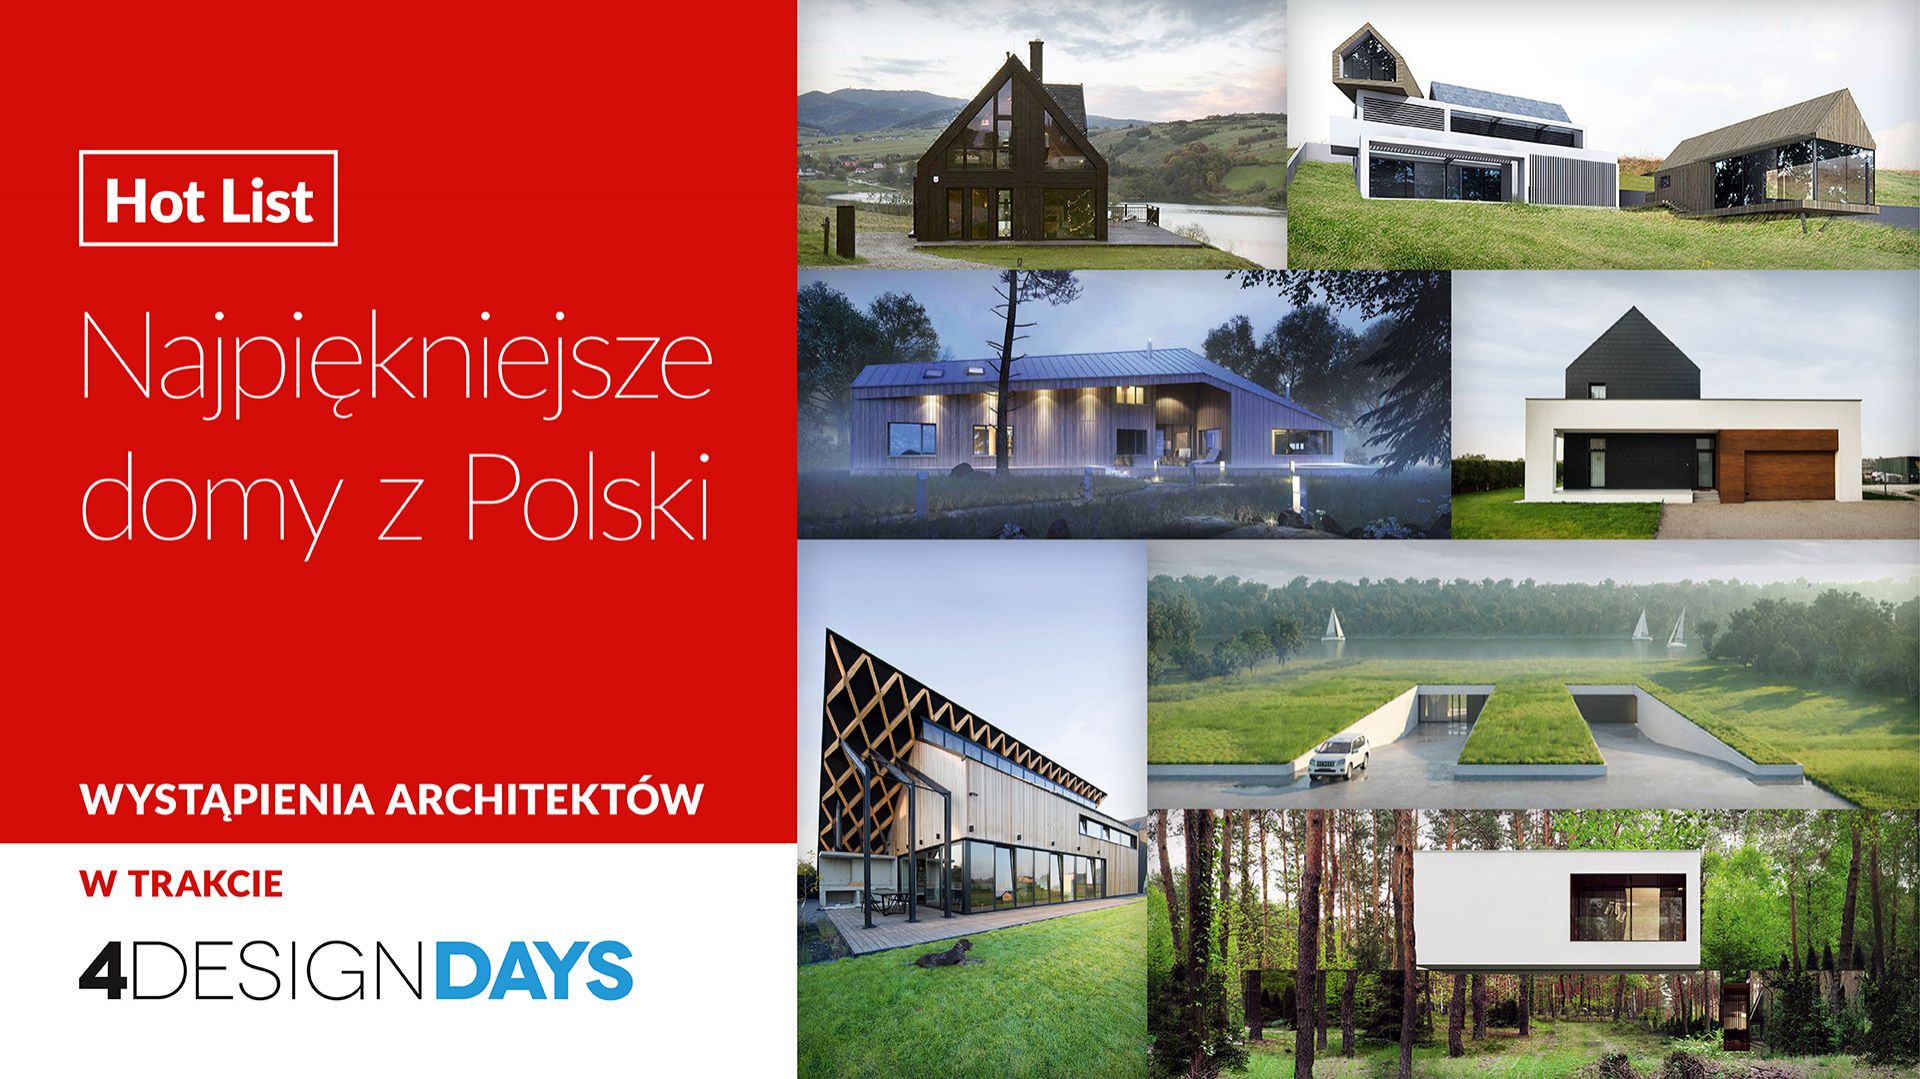 Hot List! Najpiękniejsze domy z Polski na 4 Design Days 2019